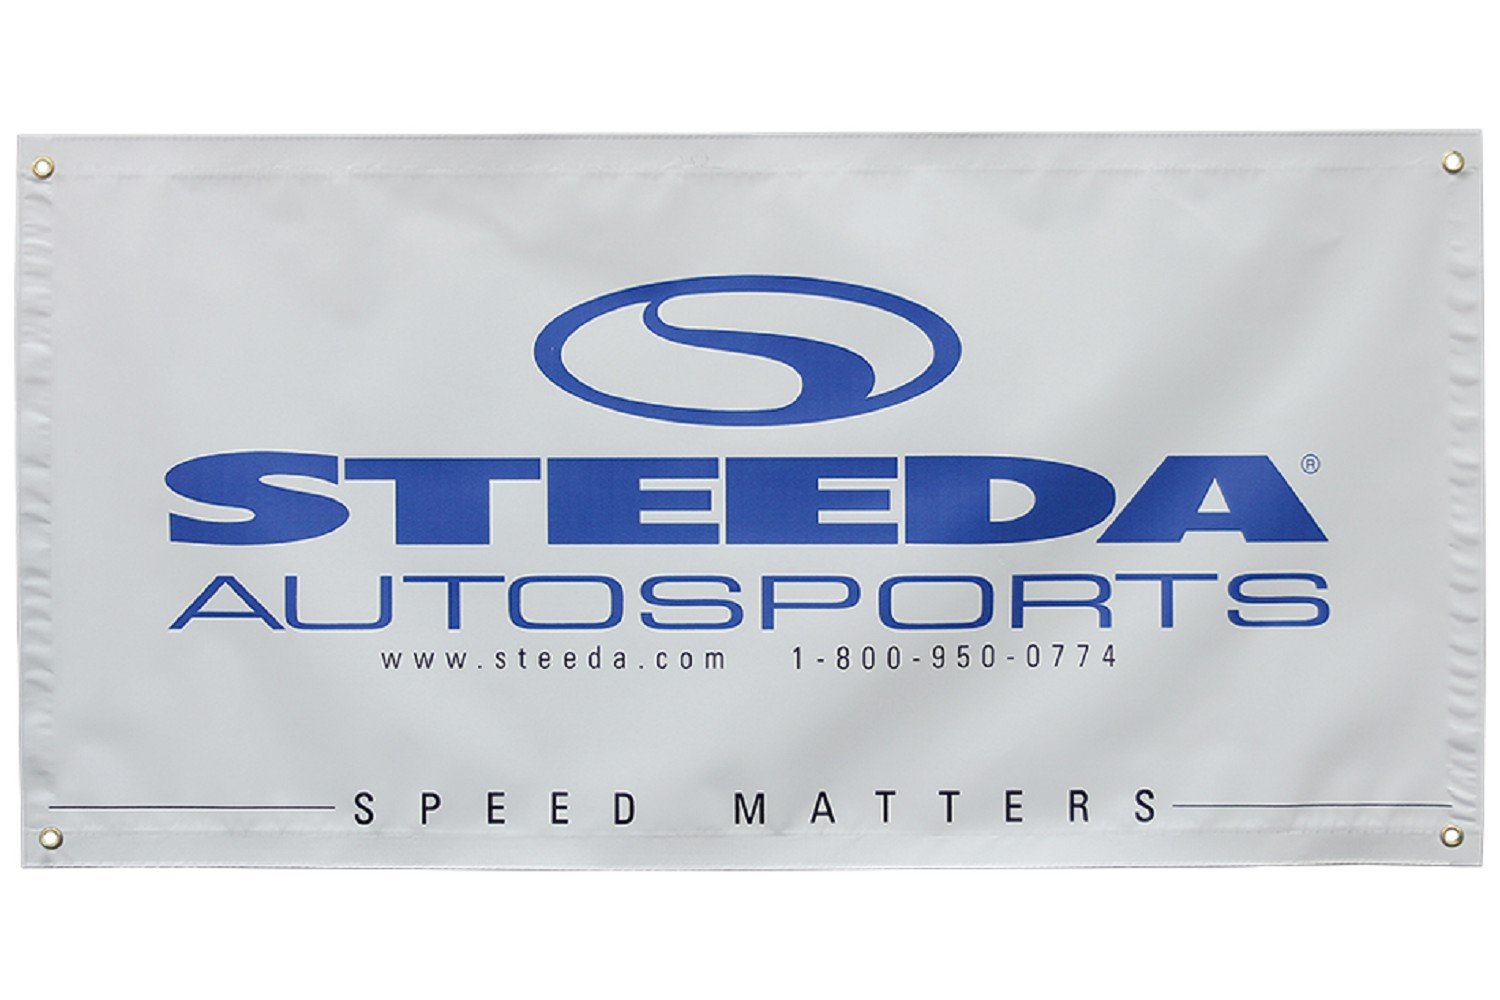 Banner del taller de Steeda Autosports